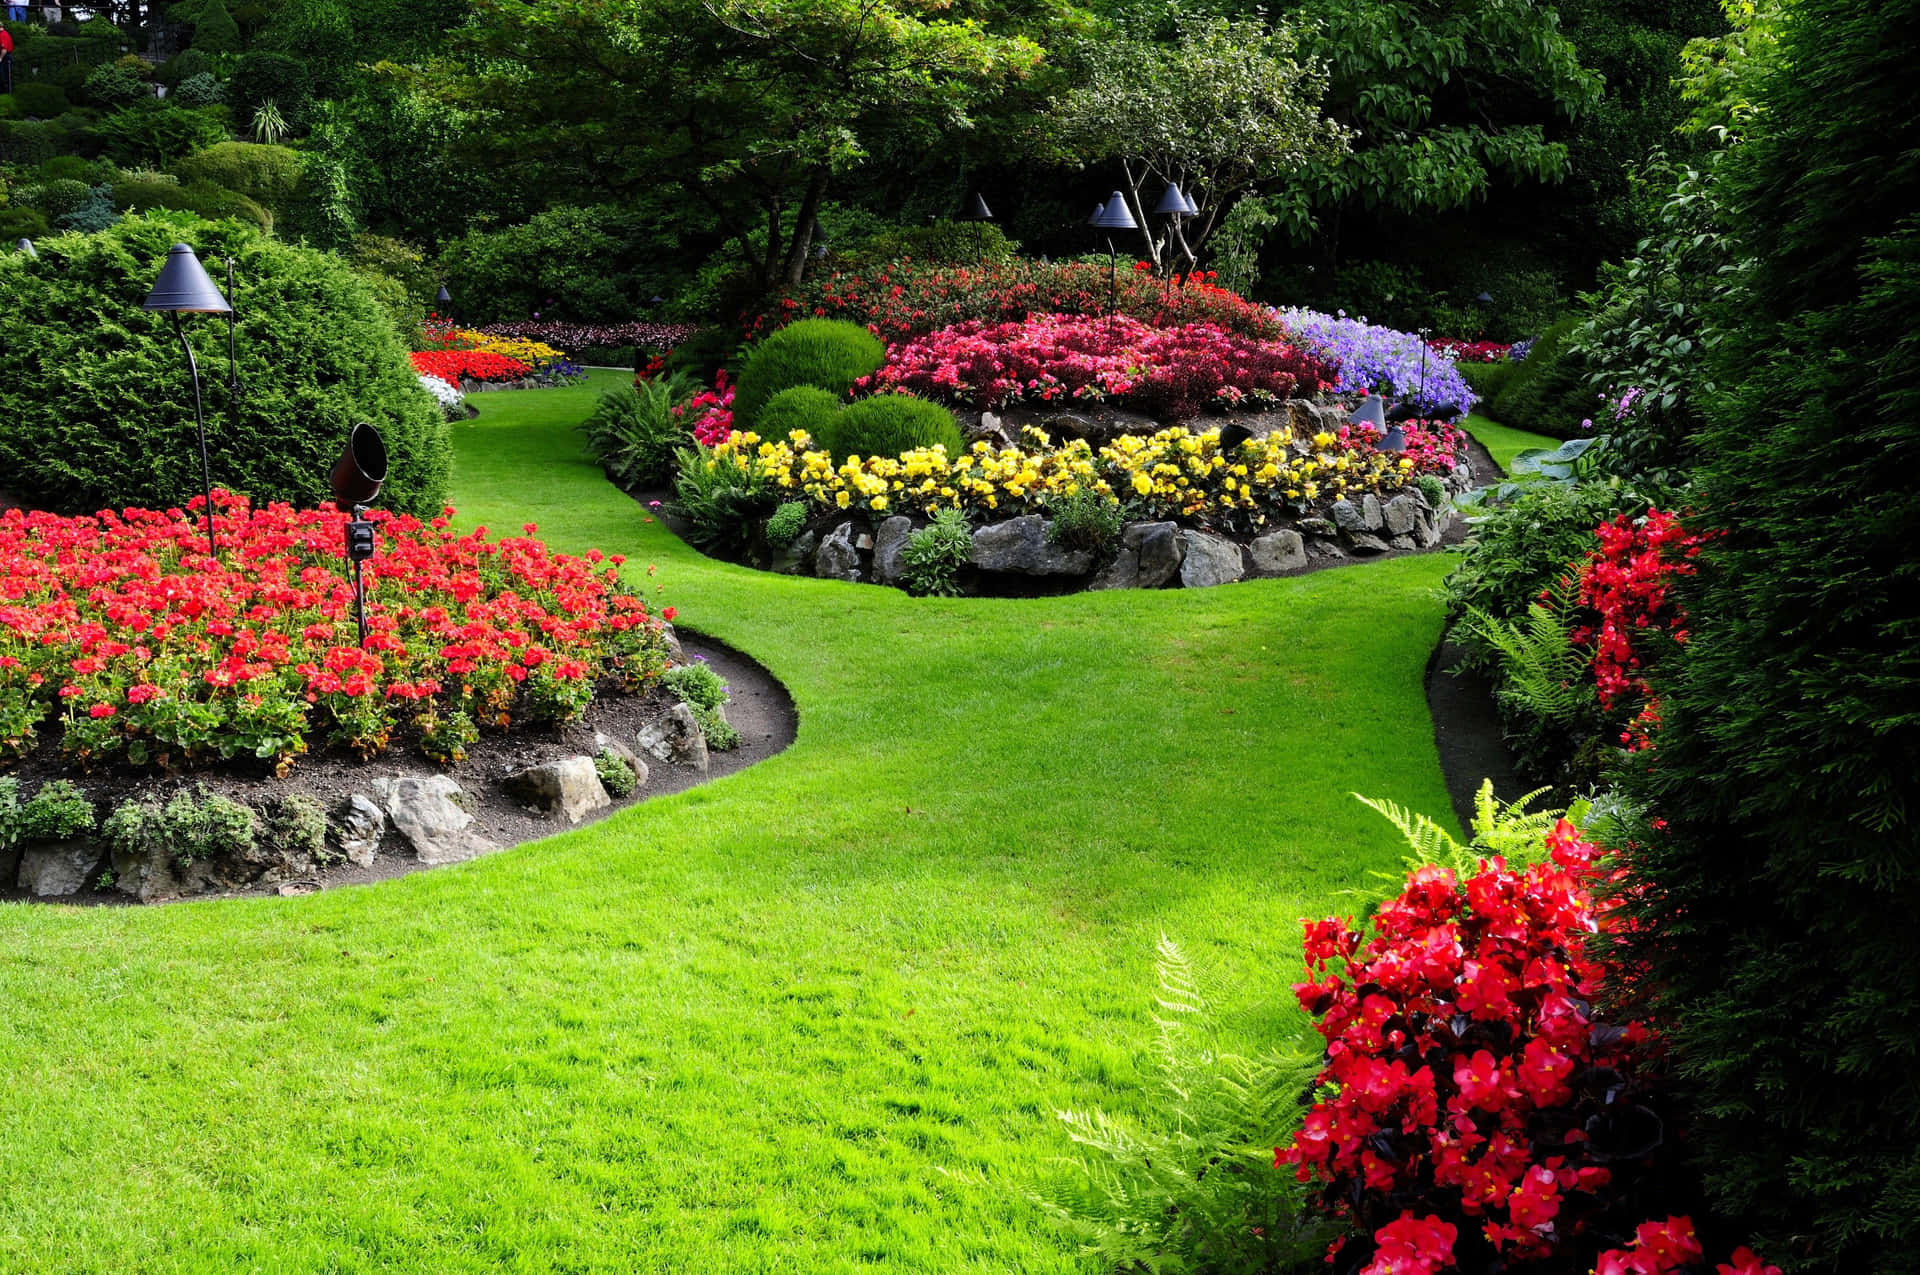 Blomsterträdgårdslandskapbilder